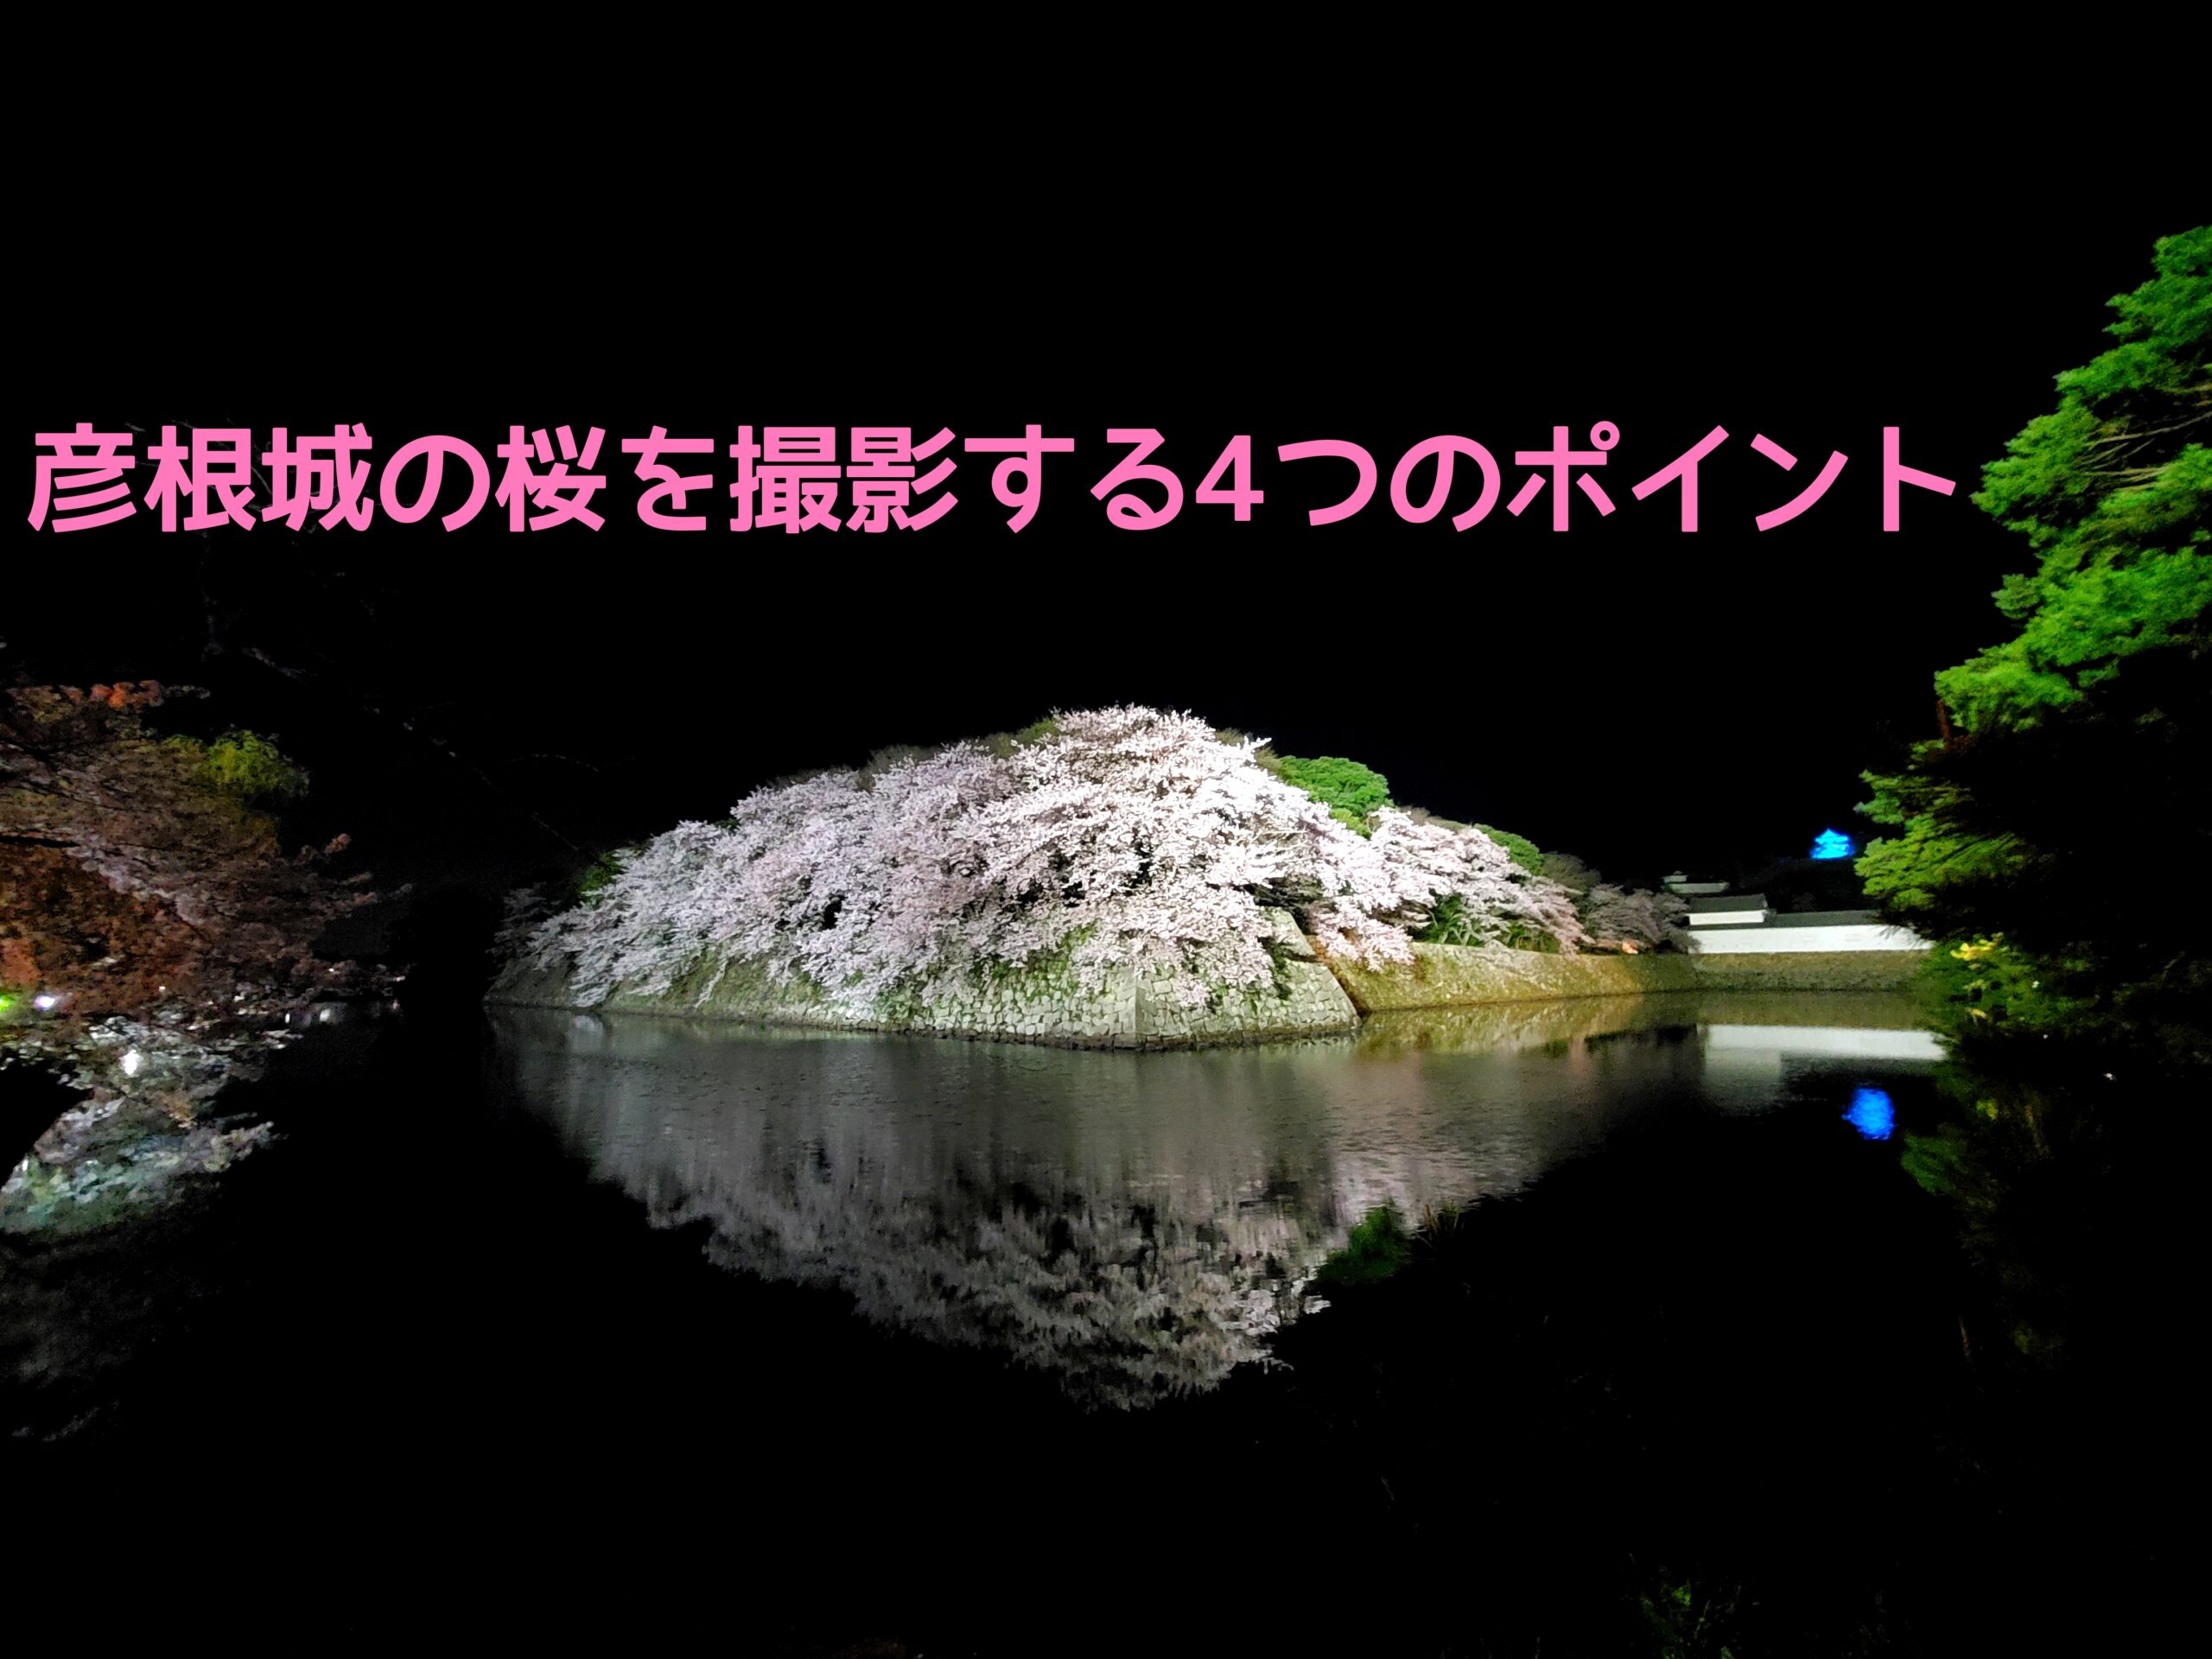 彦根城夜桜をきれいに撮影するための4つのポイント おぺぺないとブログ